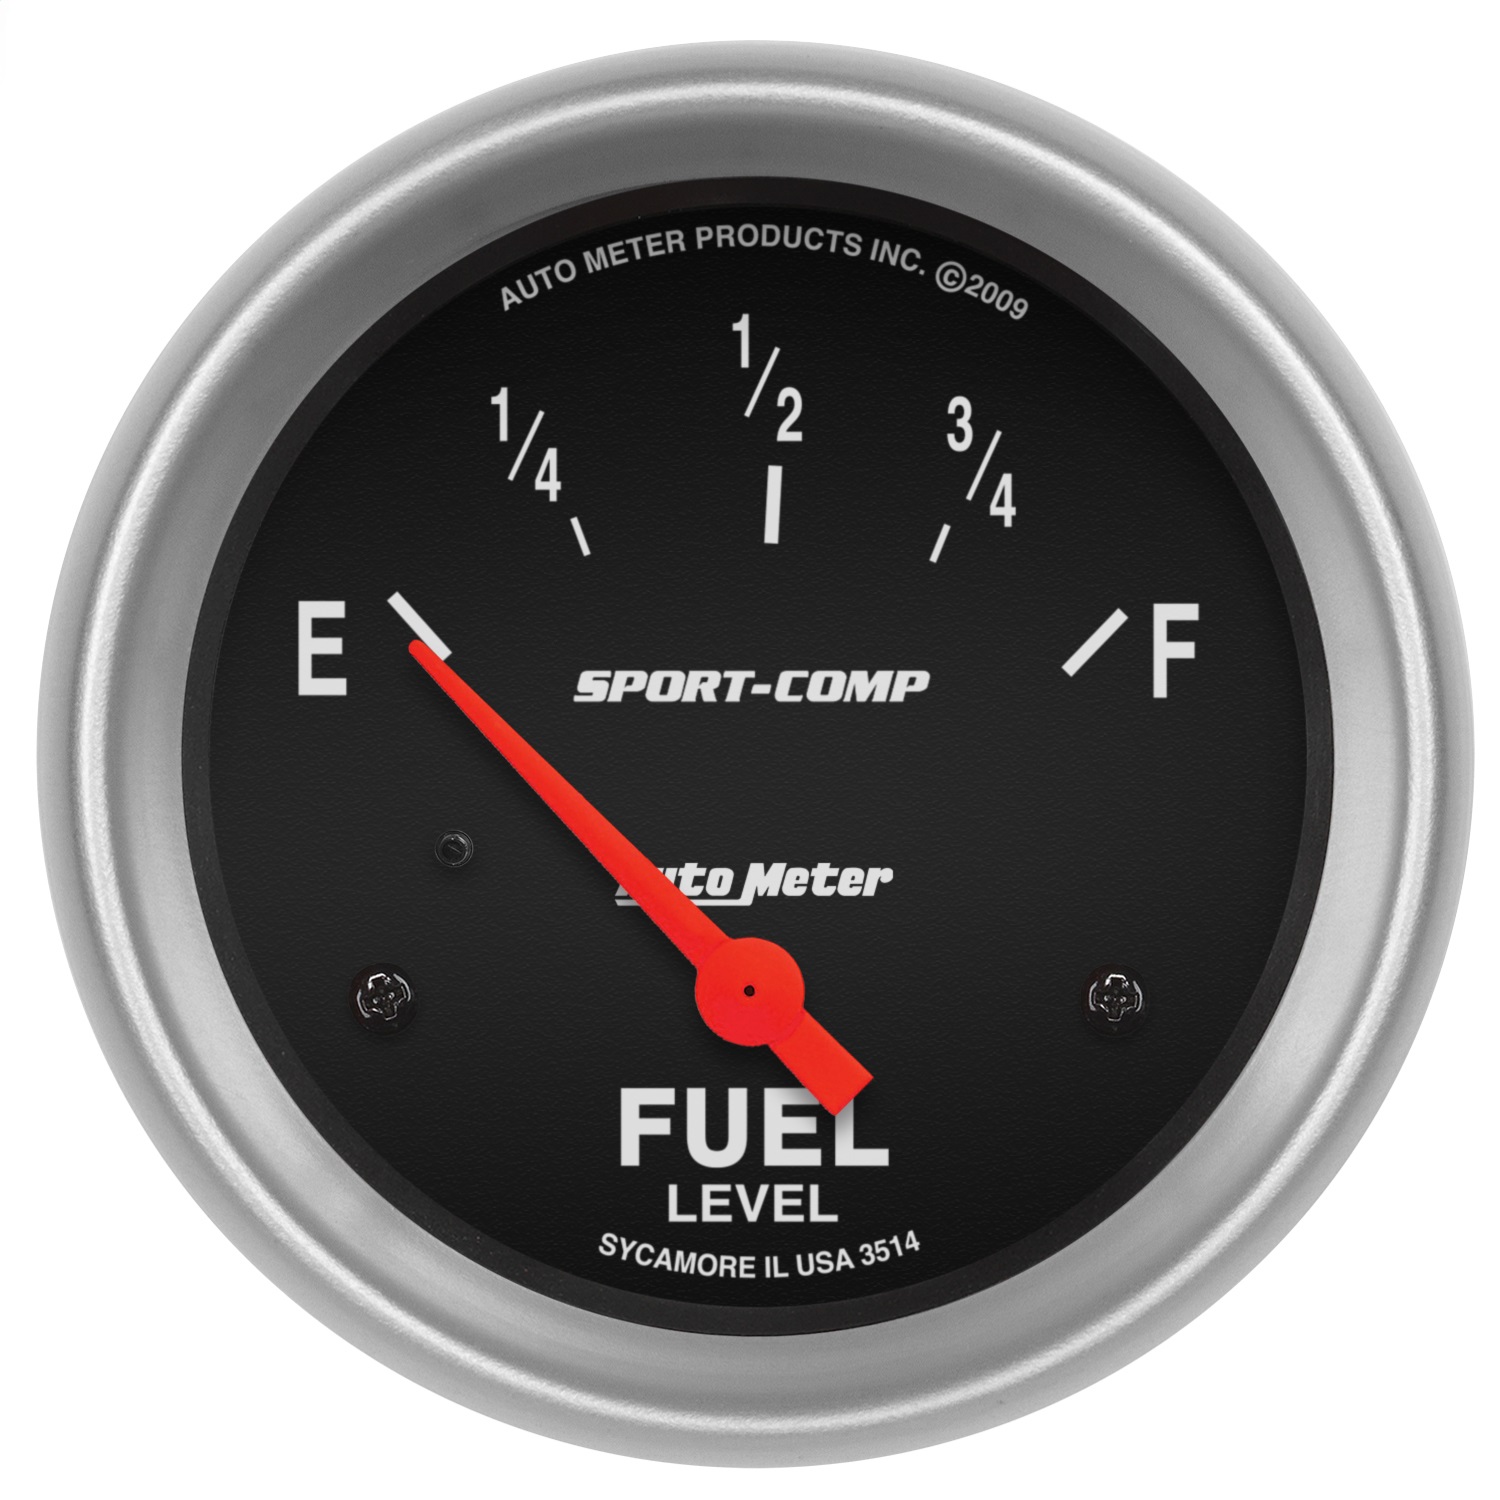 Auto Meter Auto Meter 3514 Sport-Comp; Electric Fuel Level Gauge